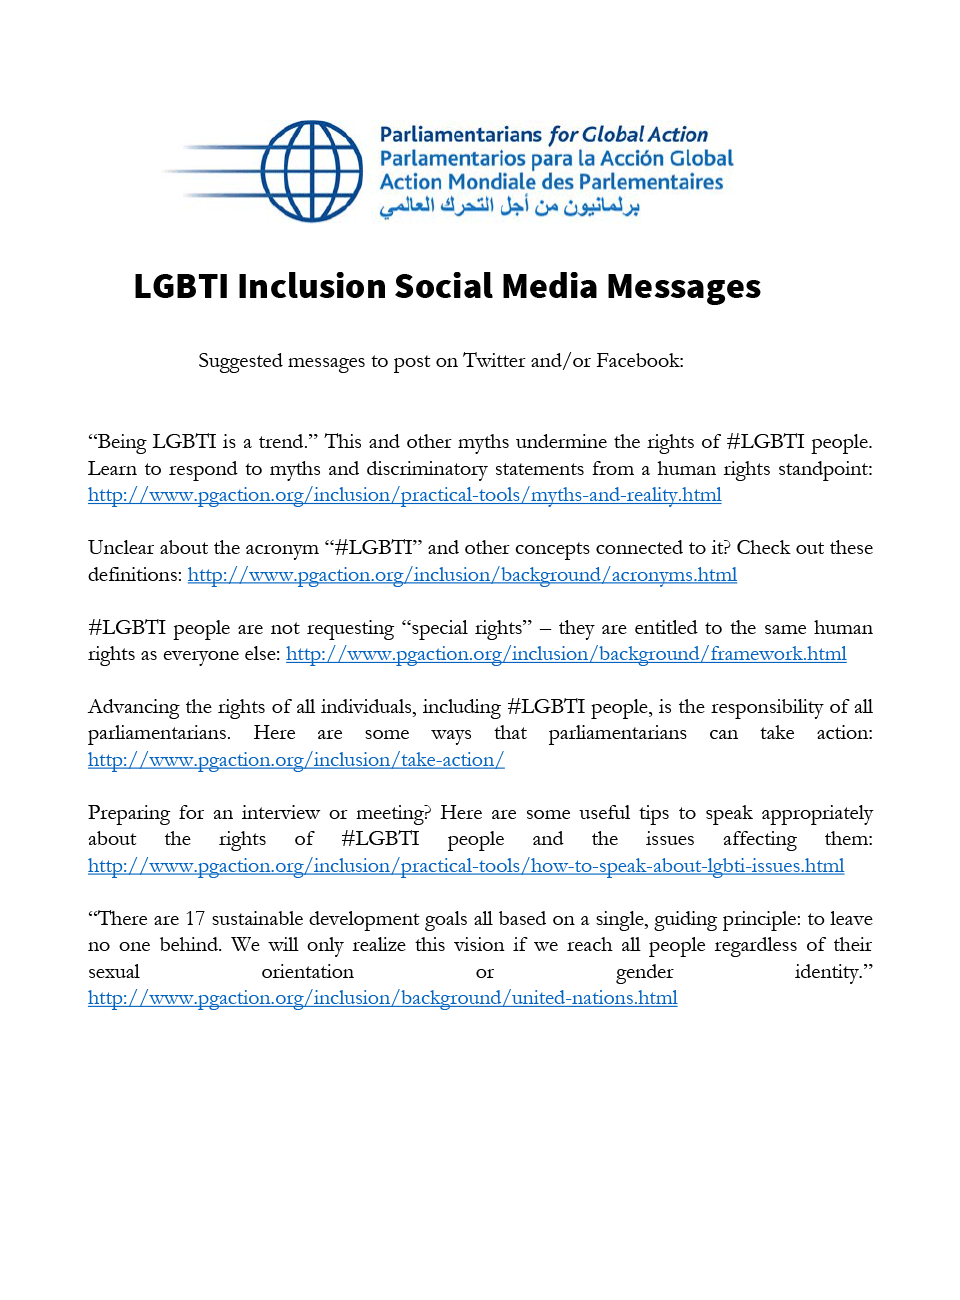 Mensajes de inclusión LGBTI en las redes sociales